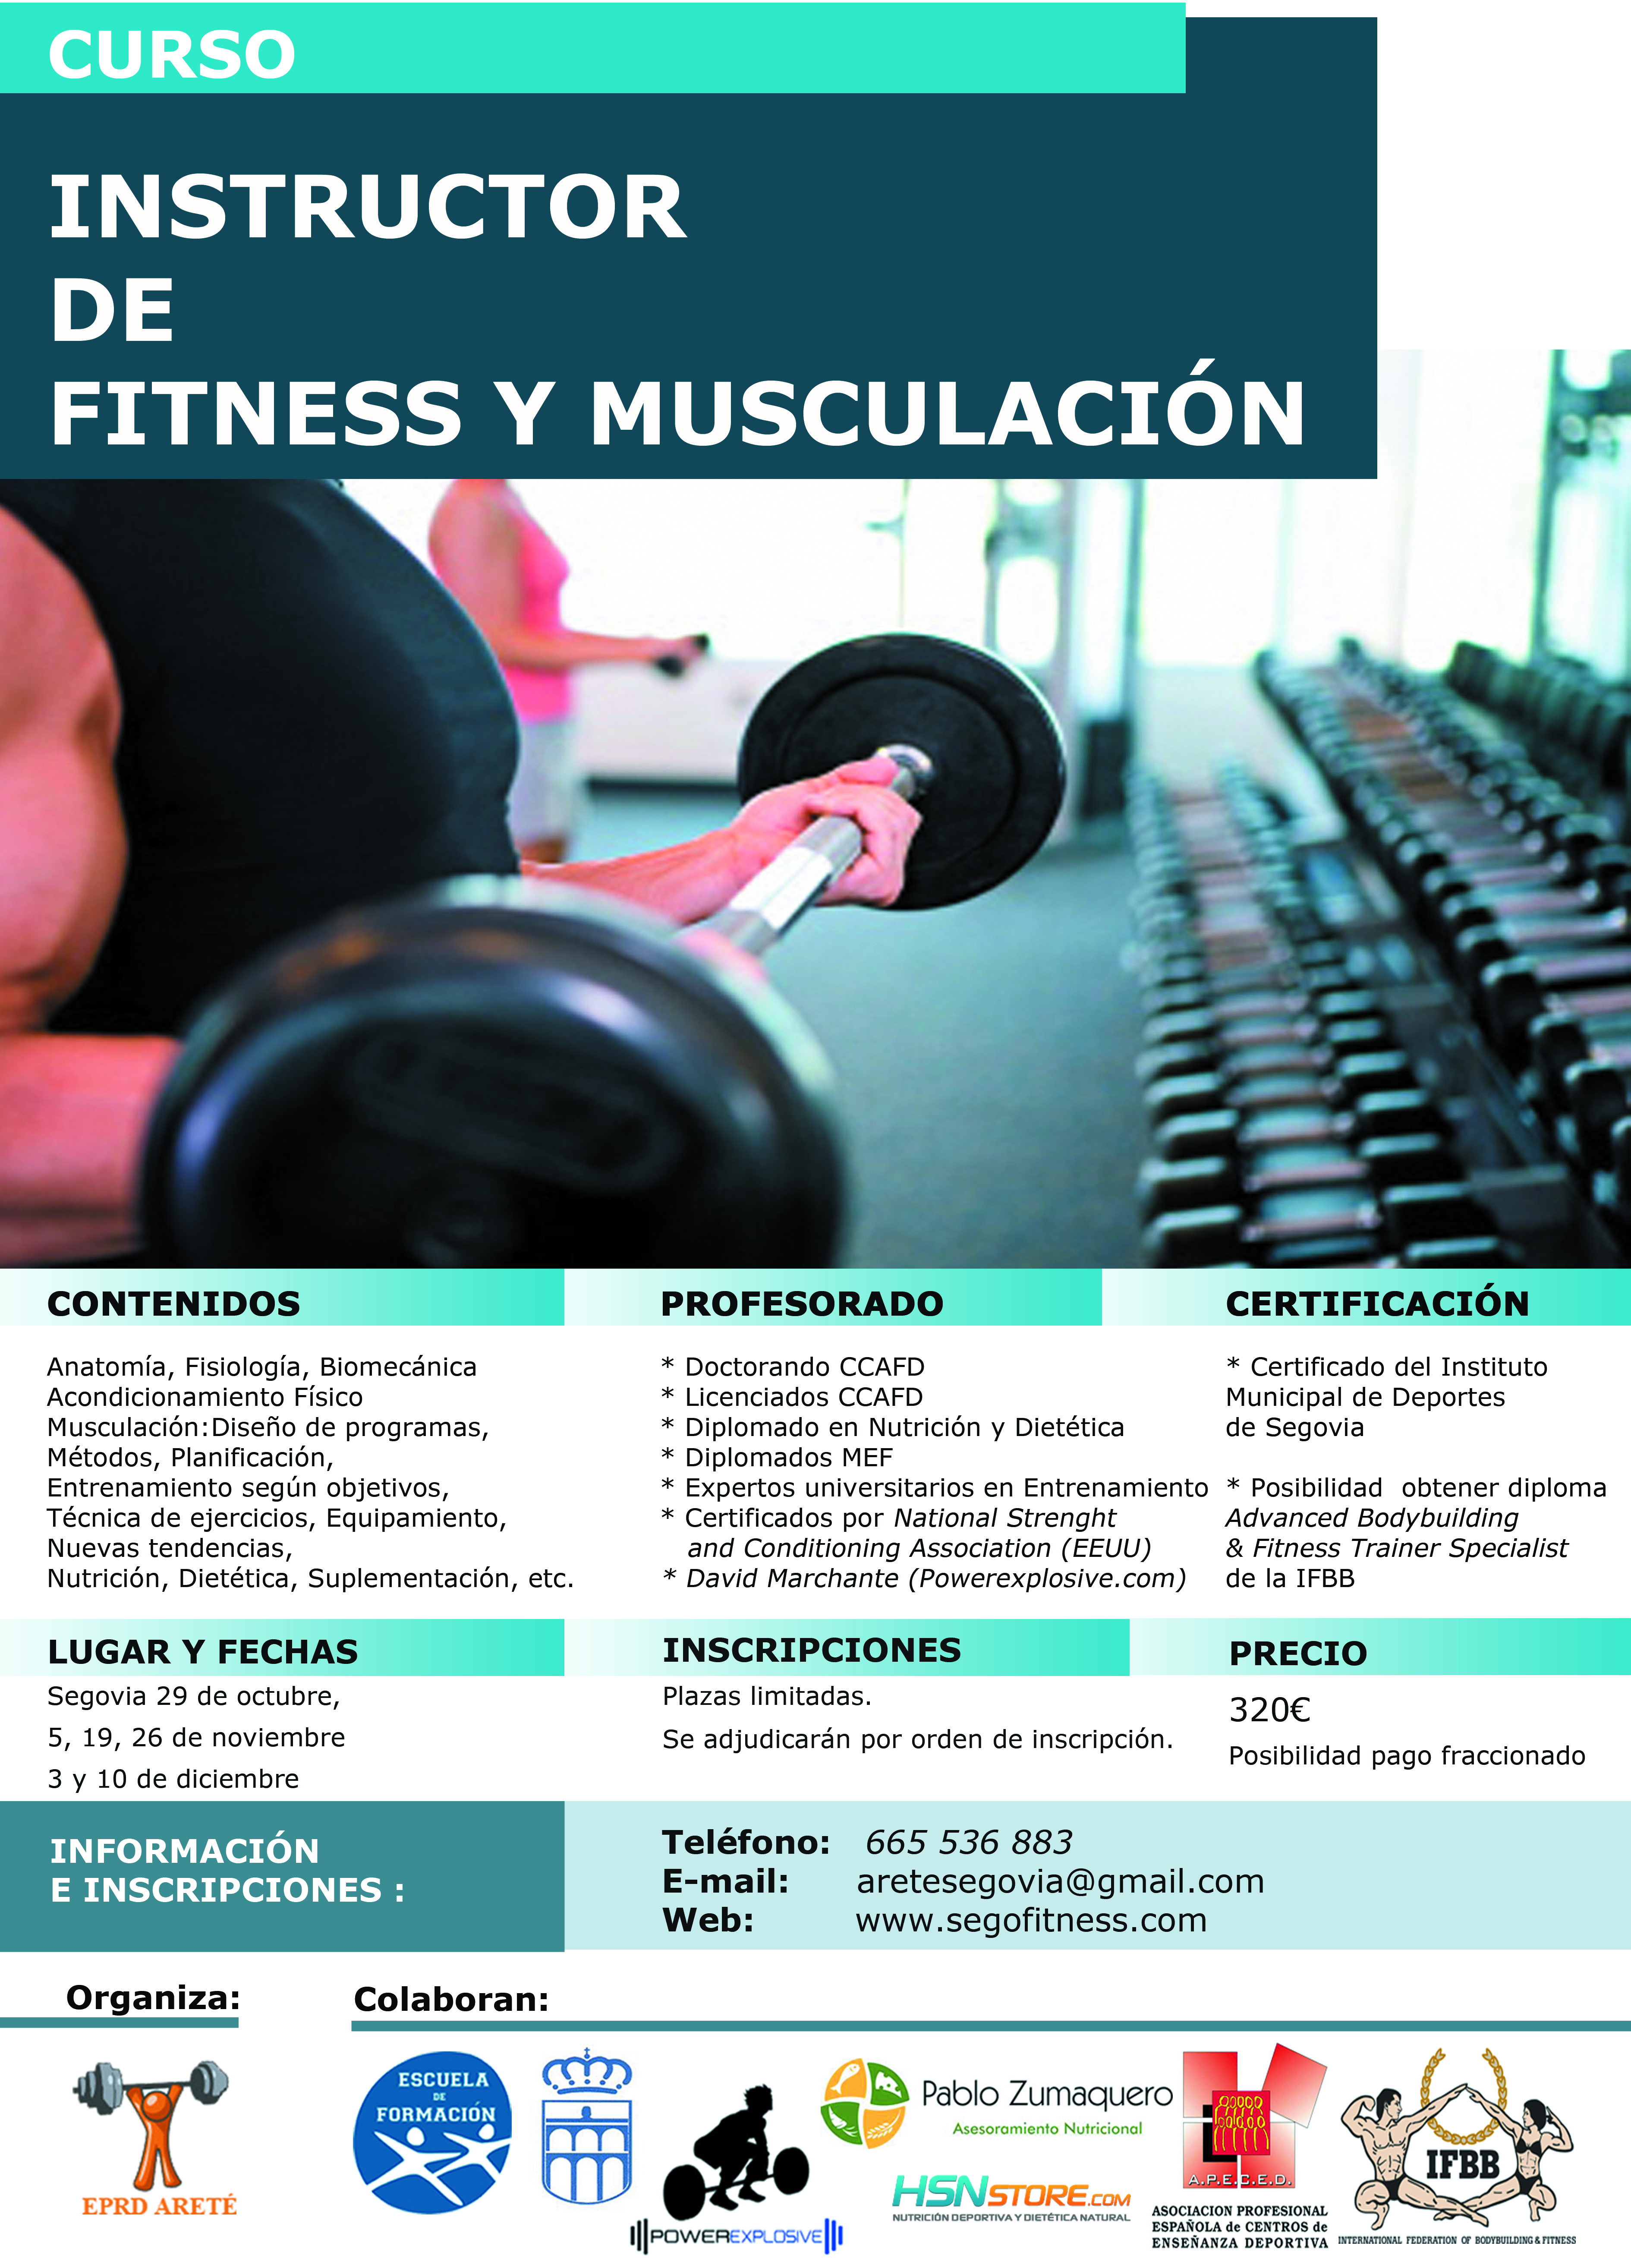 La Escuela de Formación del IMD lanza una nueva edición del curso de Instructor de Fitness y Musculación 2016